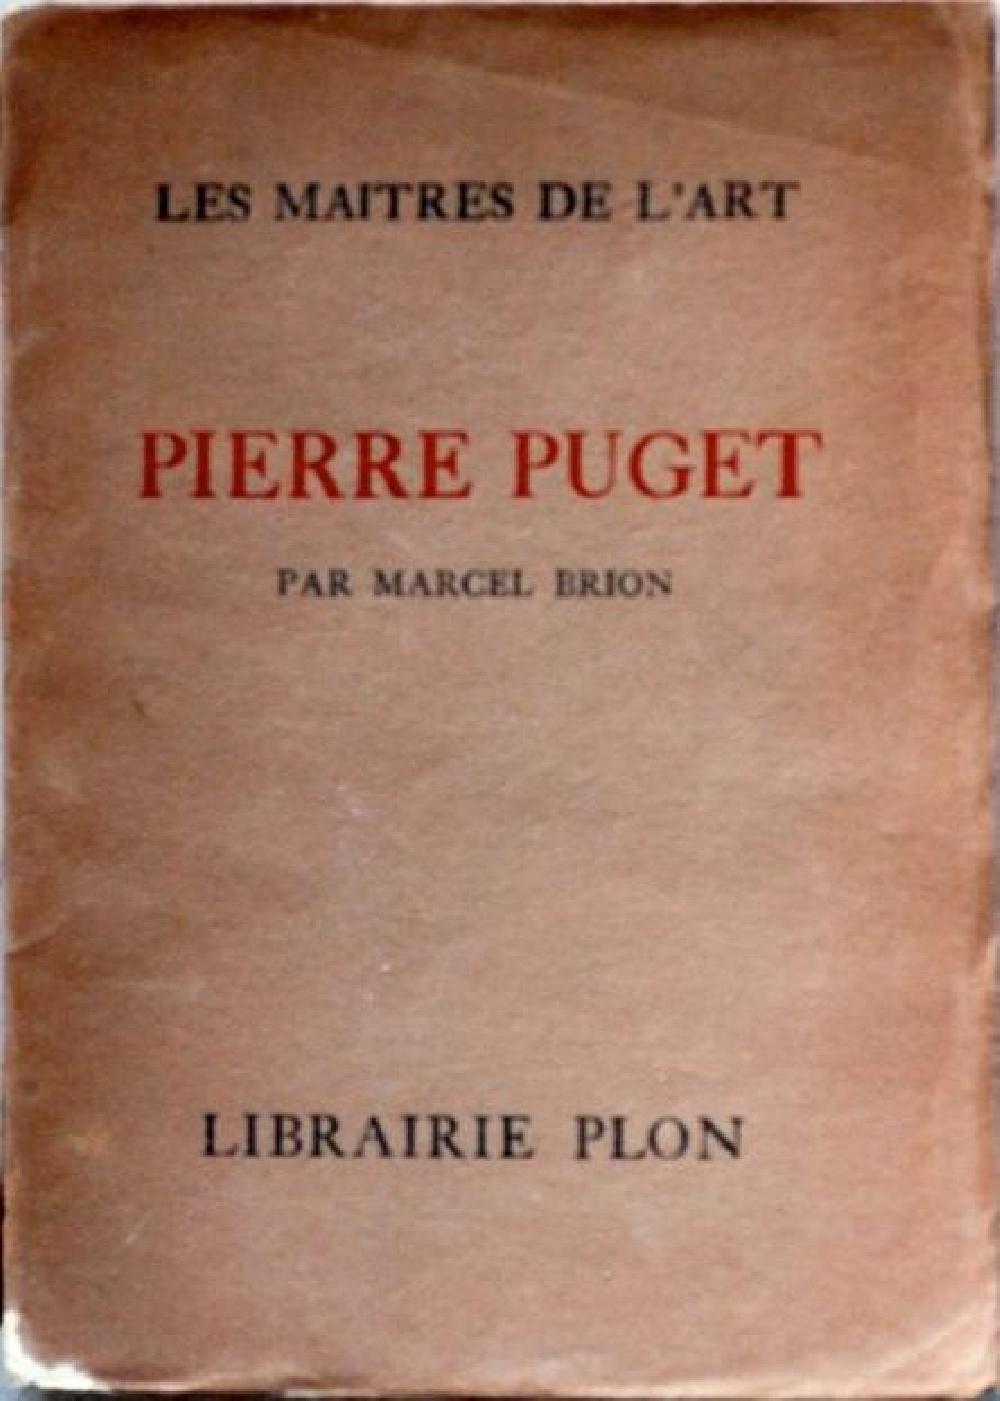 Les maîtres de l'art Pierre Puget